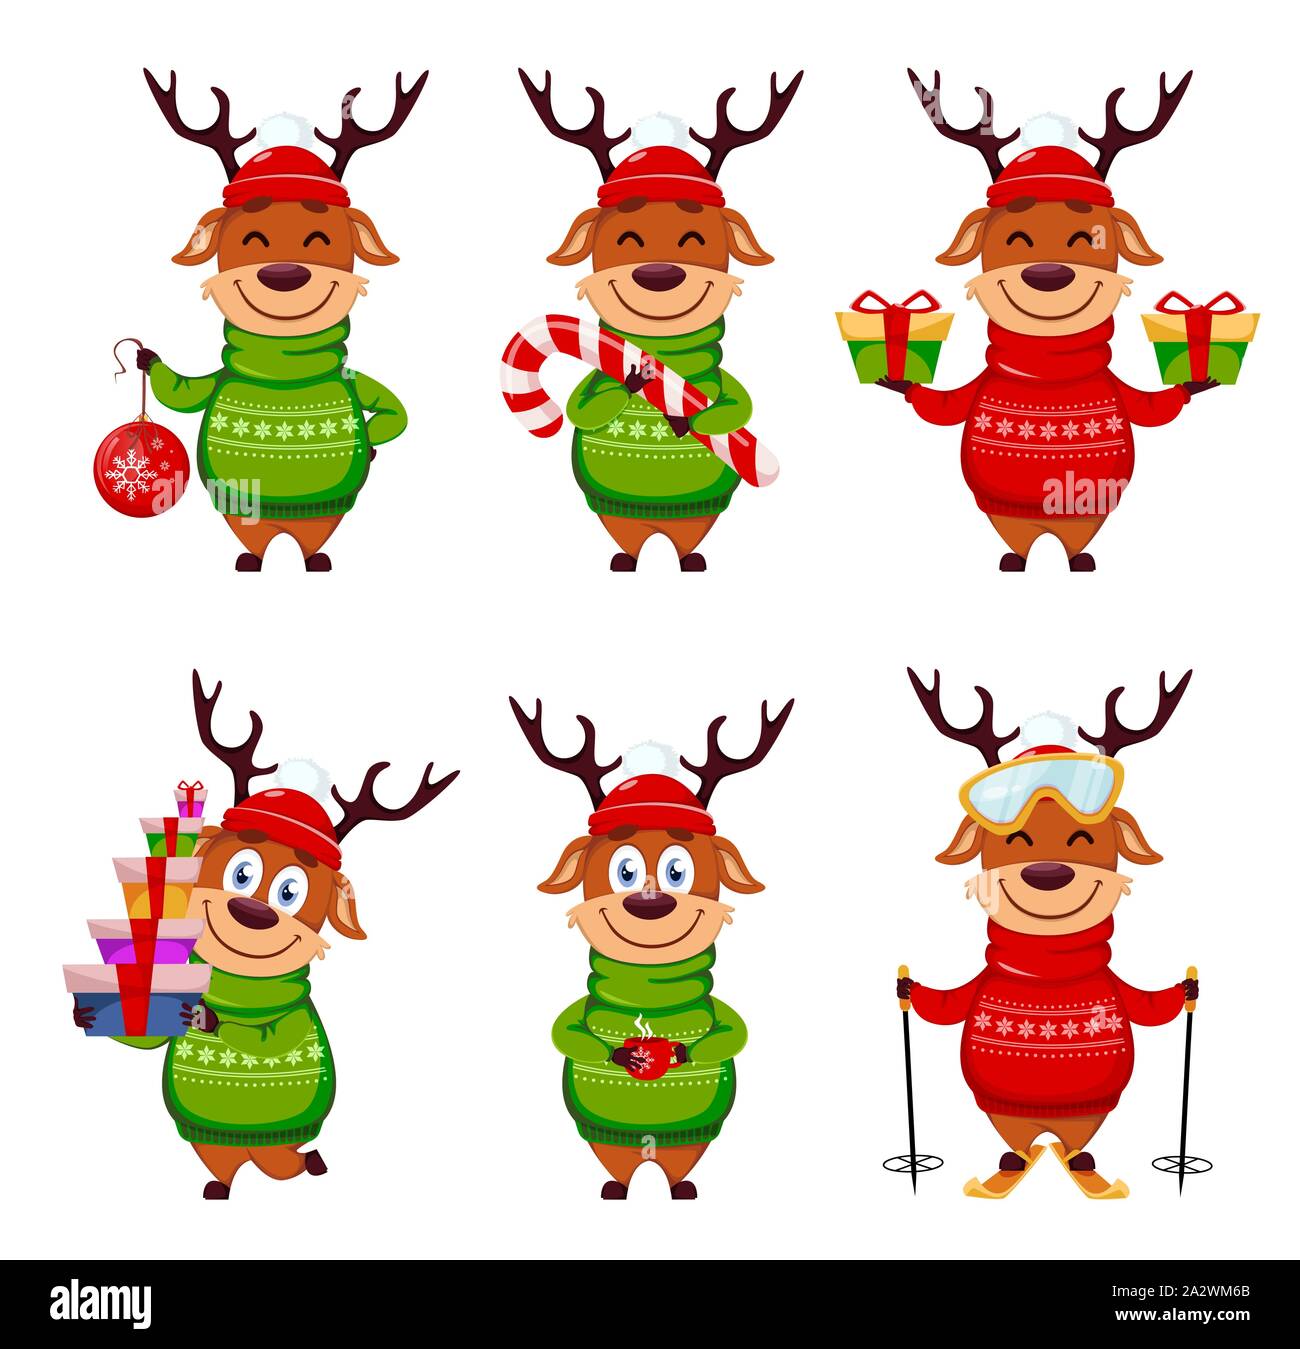 Frohe Weihnachten Lustige Rentiere Von Sechs Stellen Darstellt Cute Cartoon Charakter Vector Illustration Stock Vektorgrafik Alamy